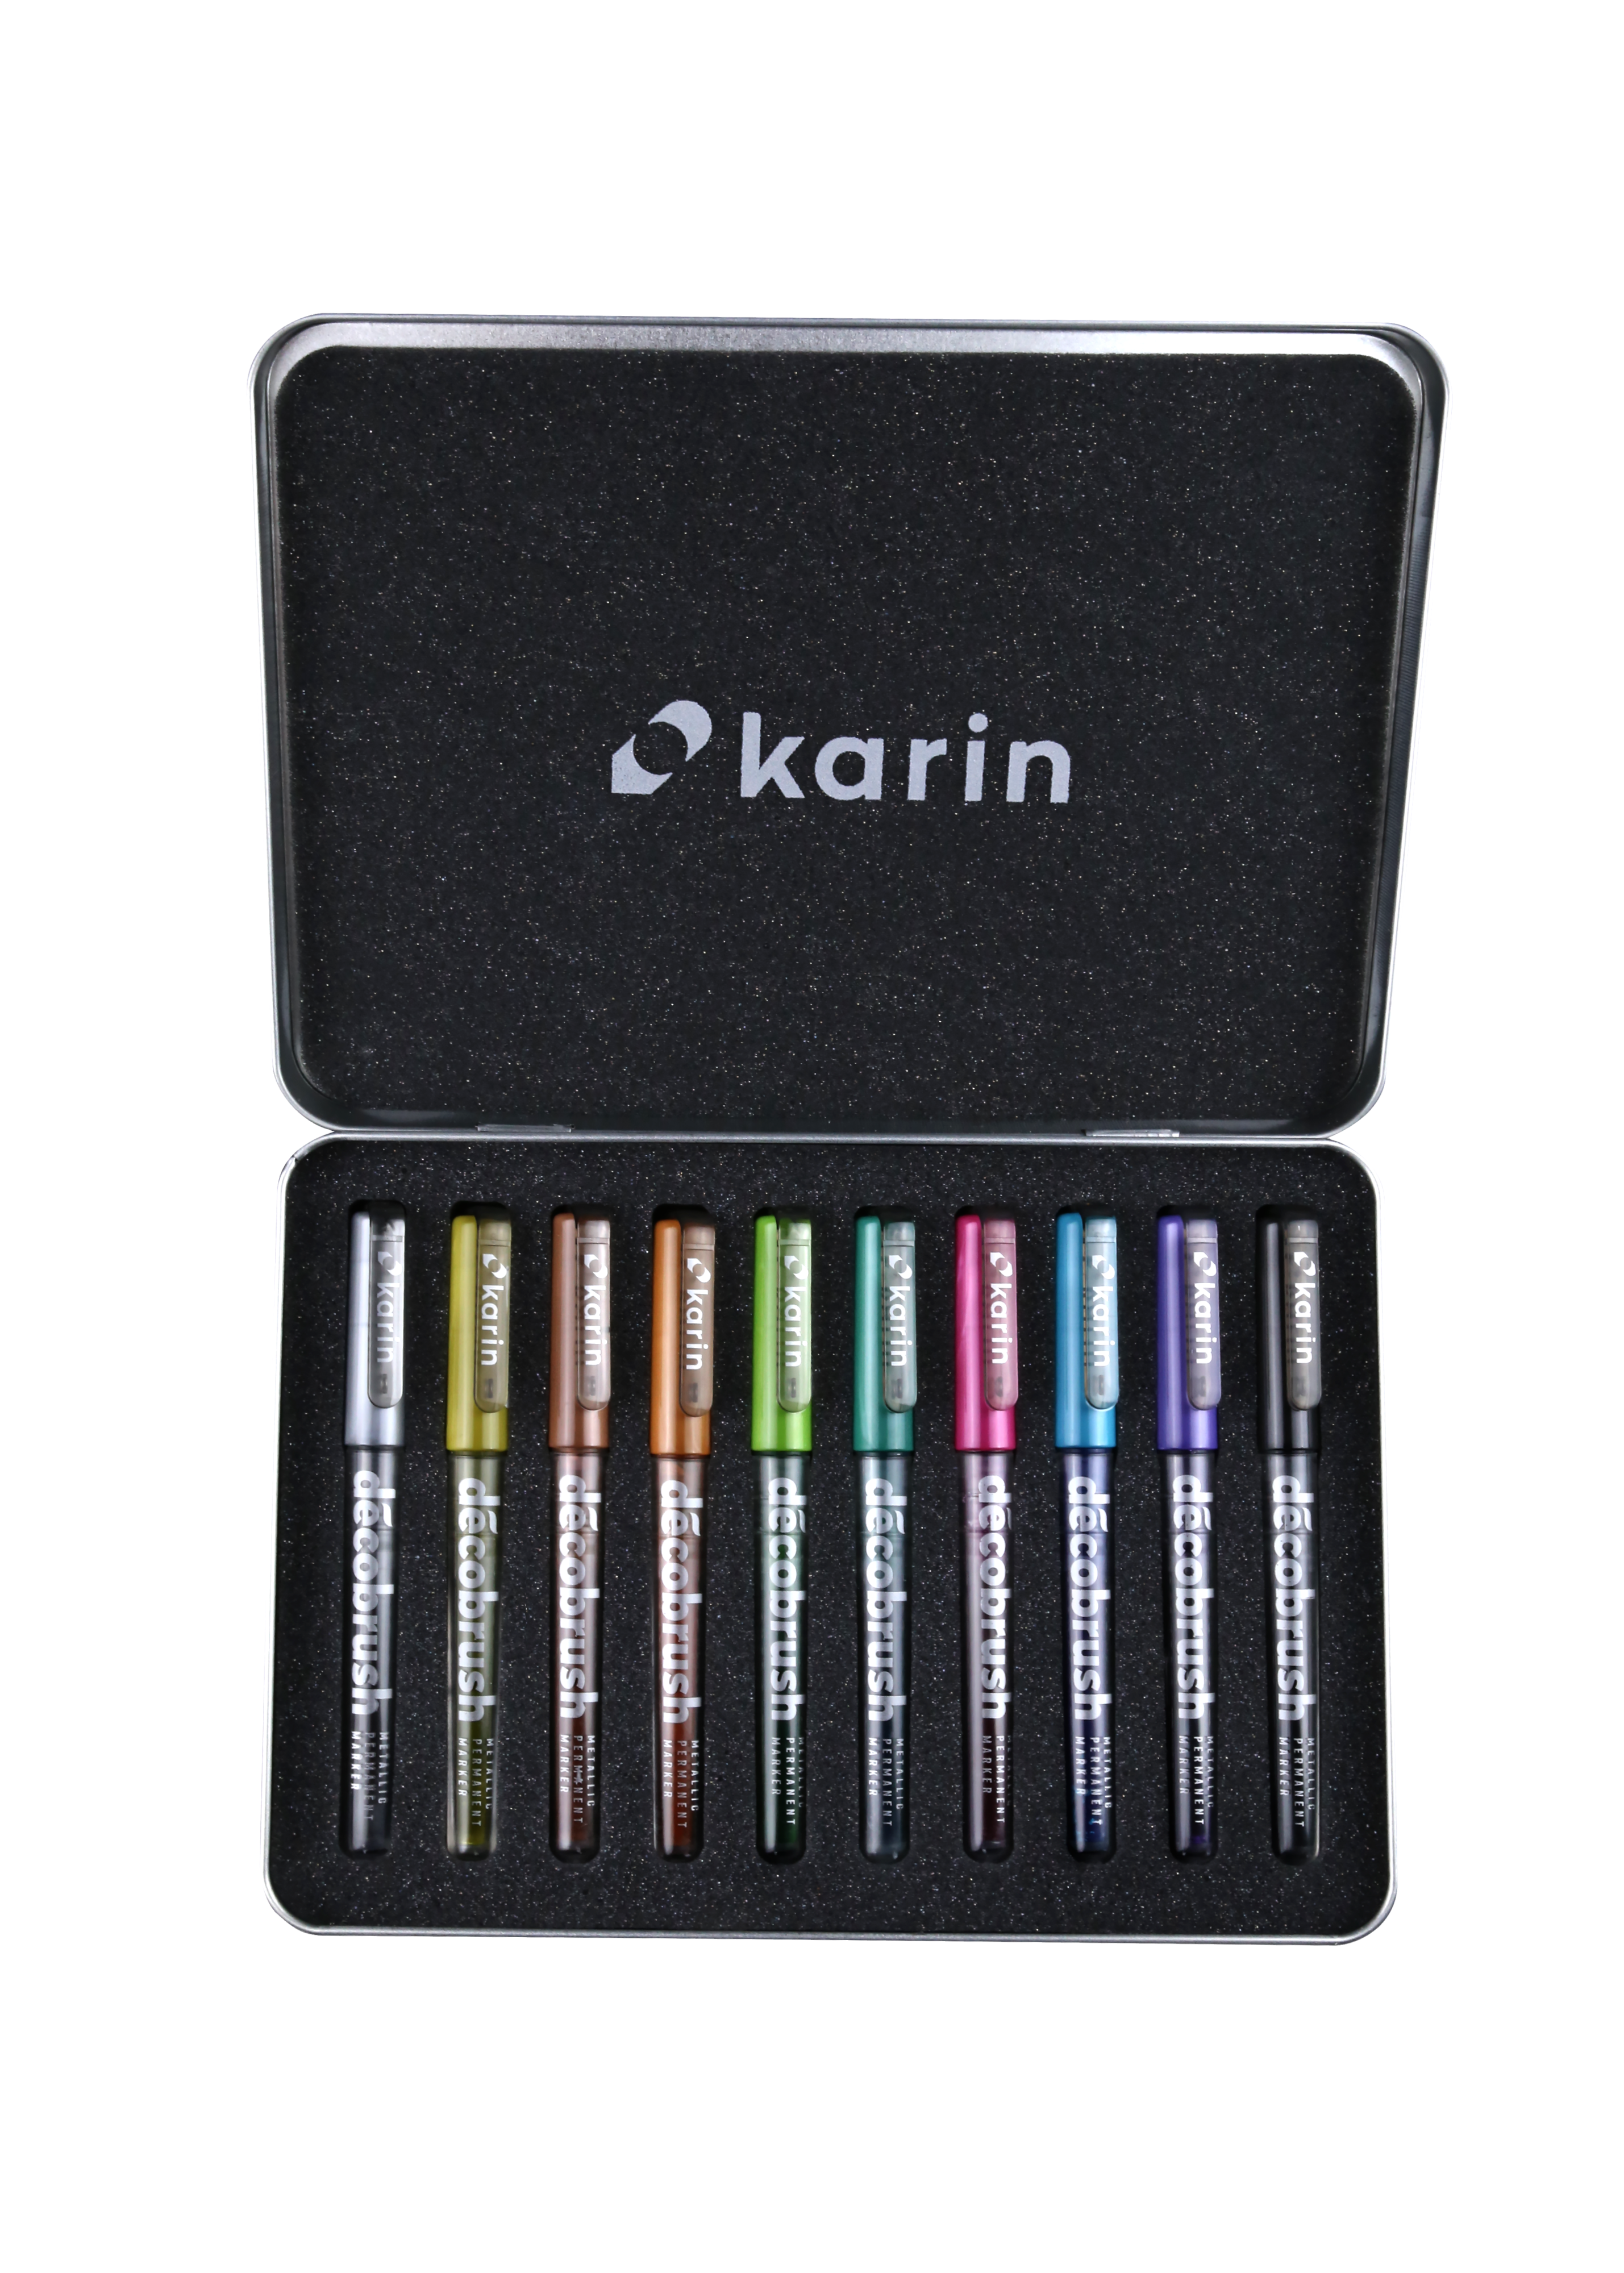 Karin déco brush Metallic Pen Set of 10